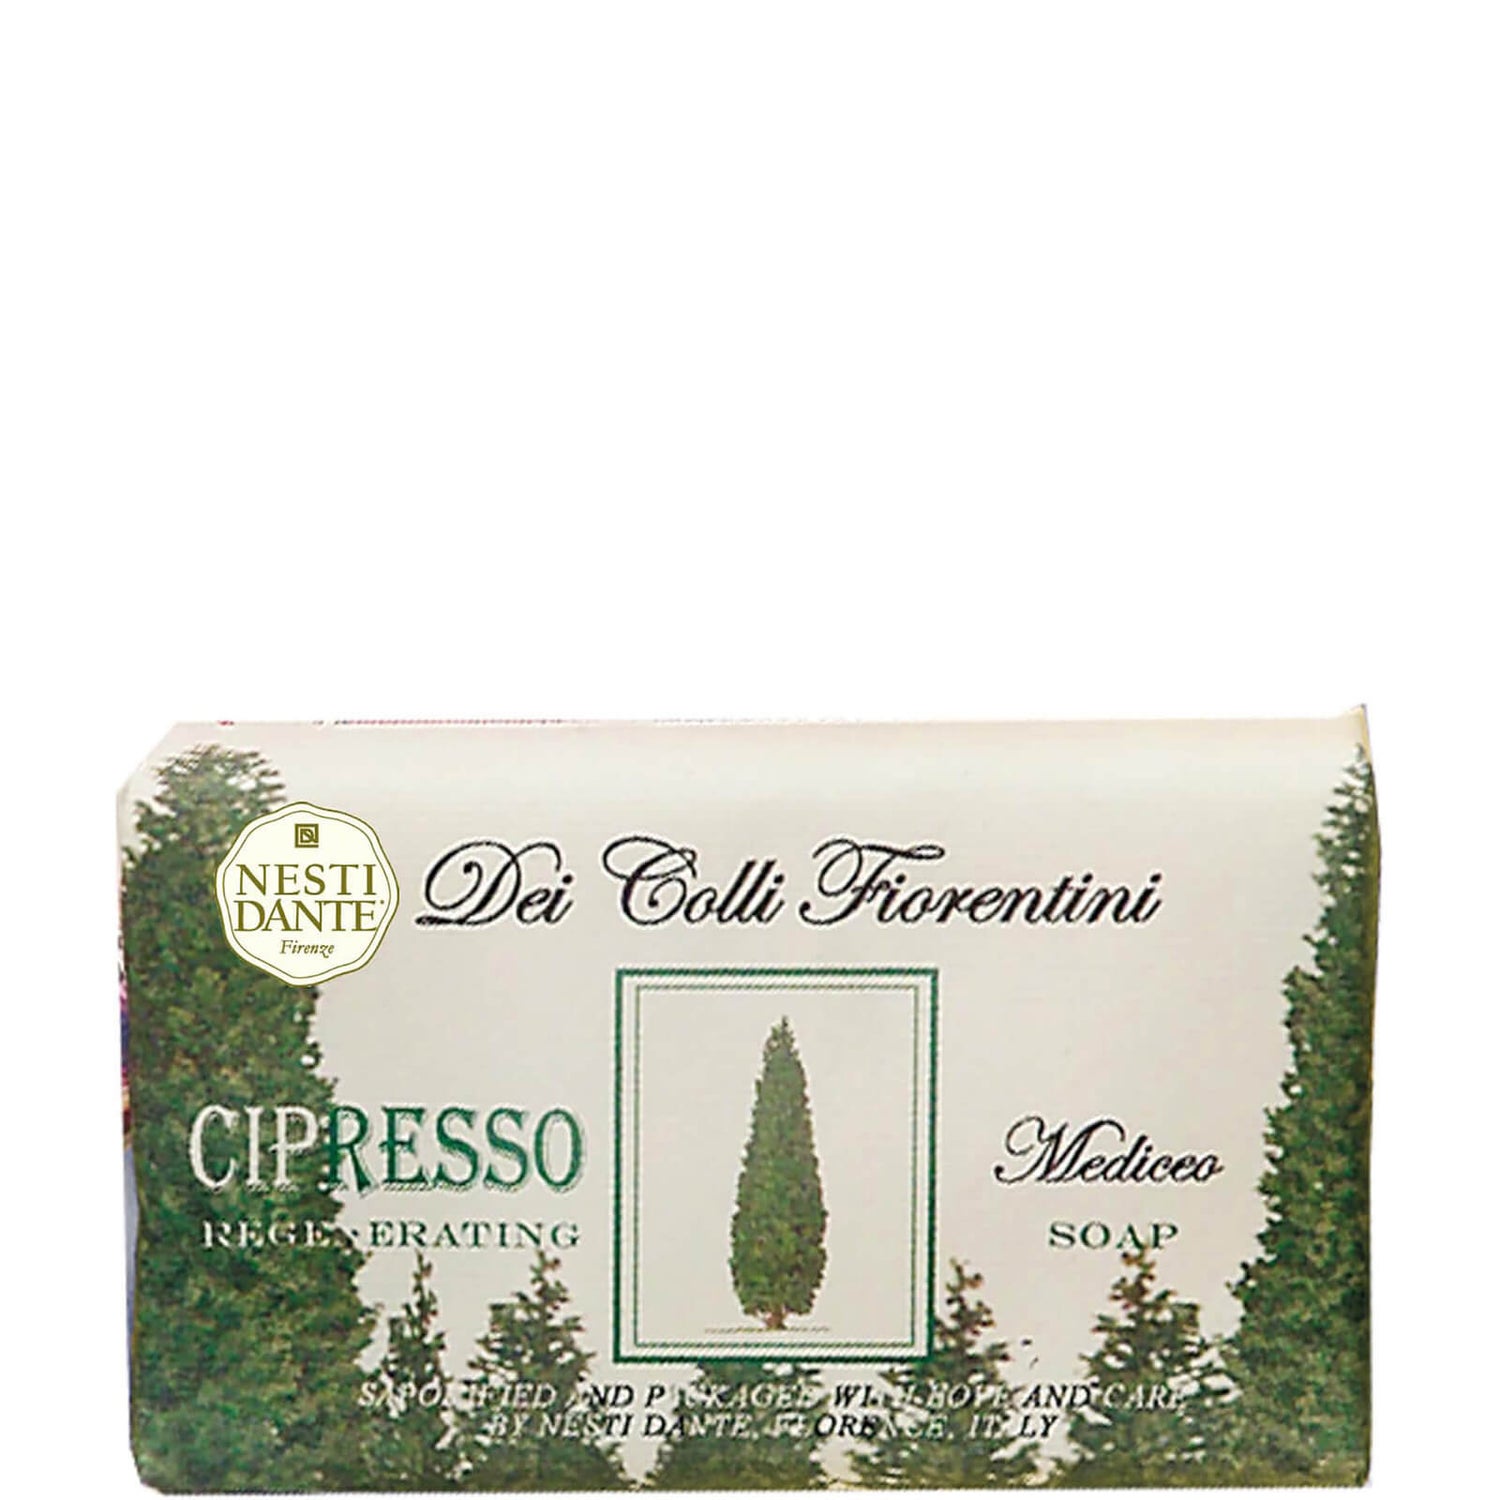 Jabón de ciprés Dei Colli Fiorentini de Nesti Dante 250 g